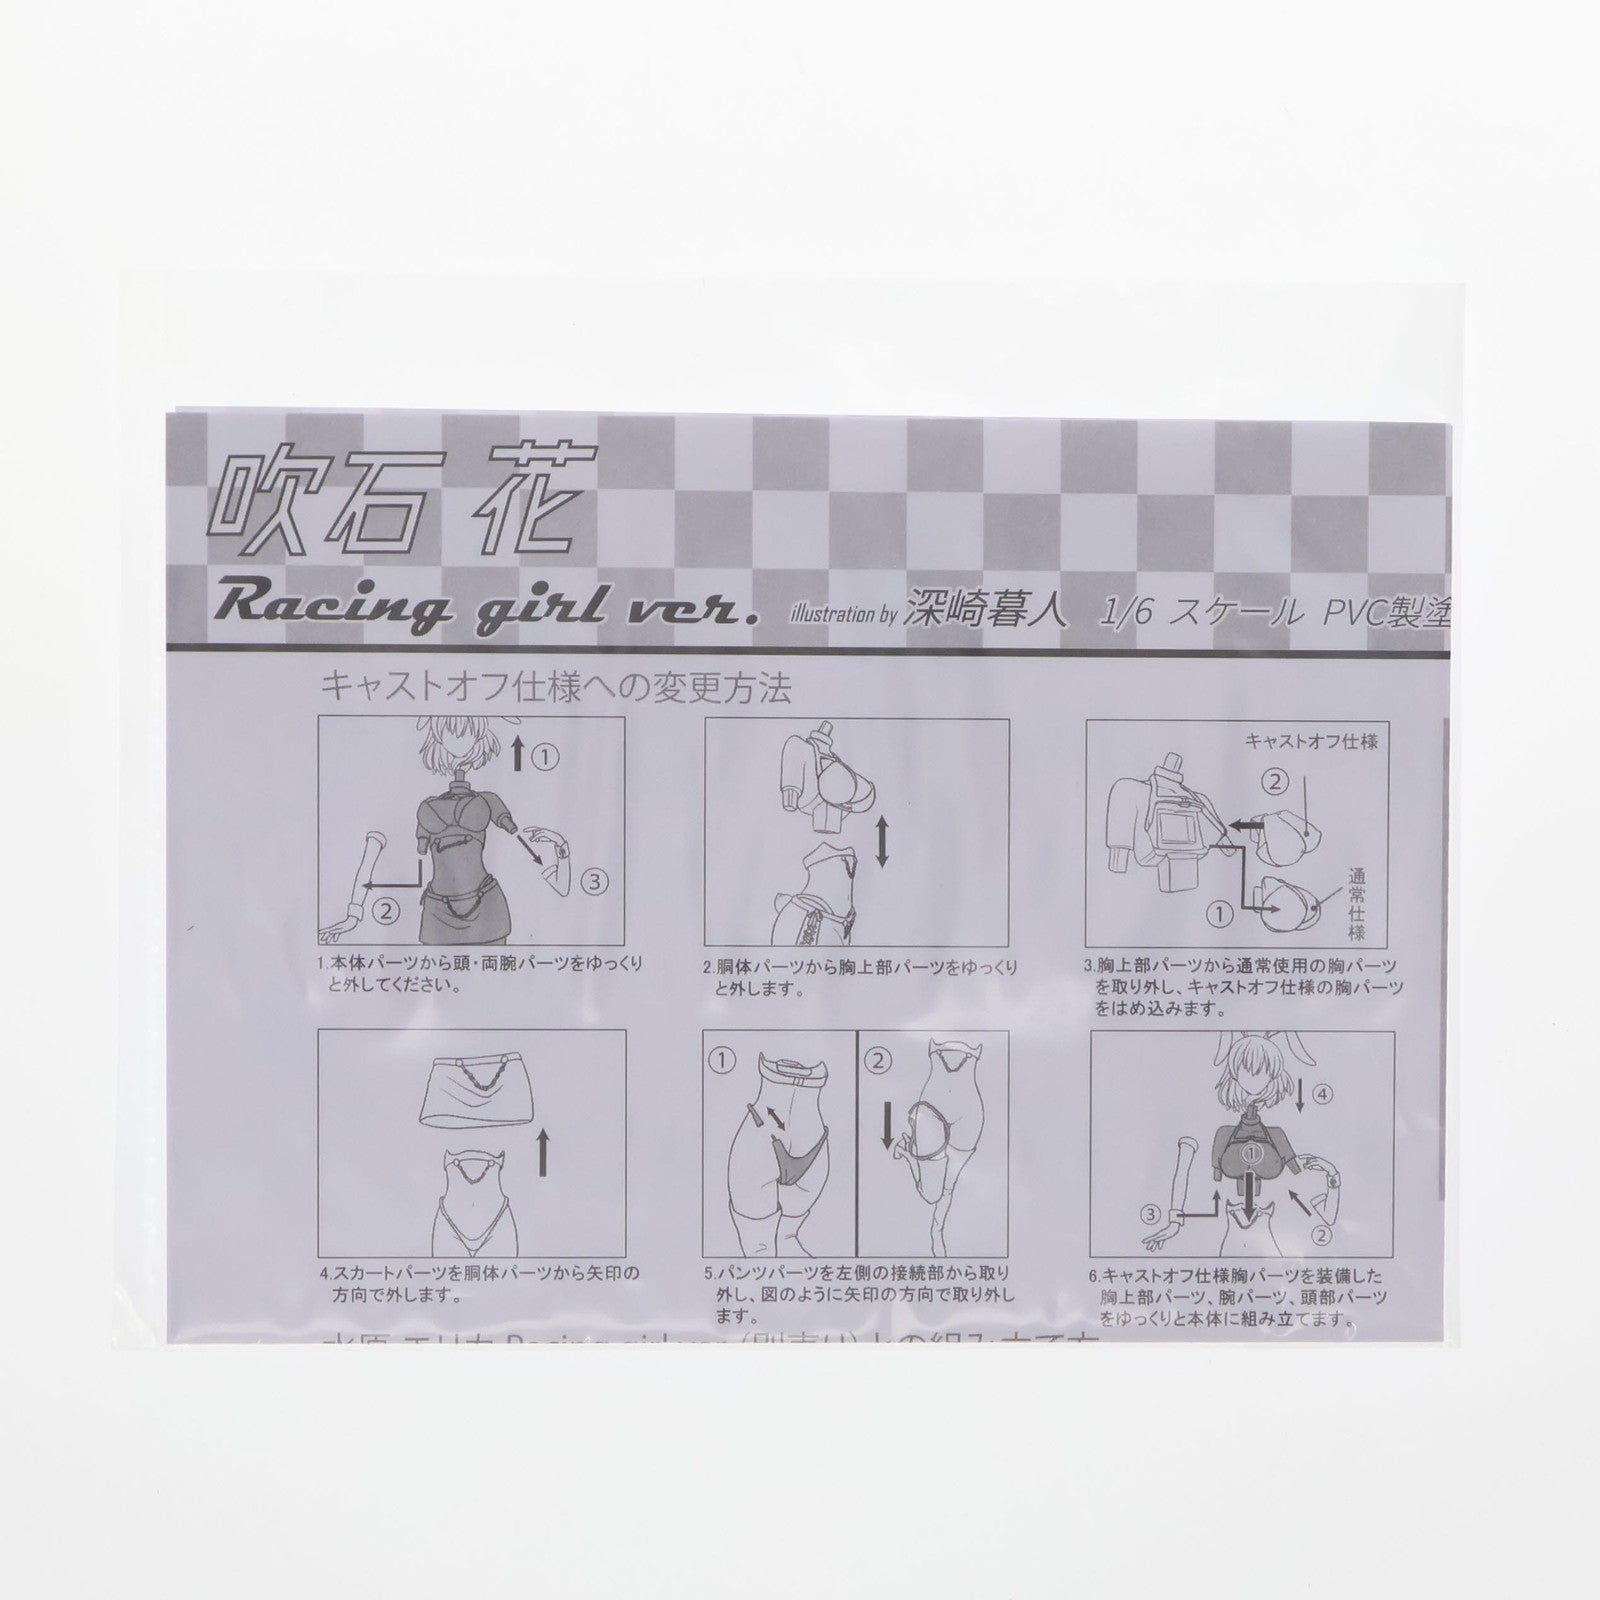 【中古即納】[FIG]ポストカード無し 吹石花(ふきいしはな) Racing girl ver. Illustration by 深崎暮人 コミック阿吽 1/6 完成品 フィギュア(AX-1045) SkyTube(スカイチューブ)(20180929)